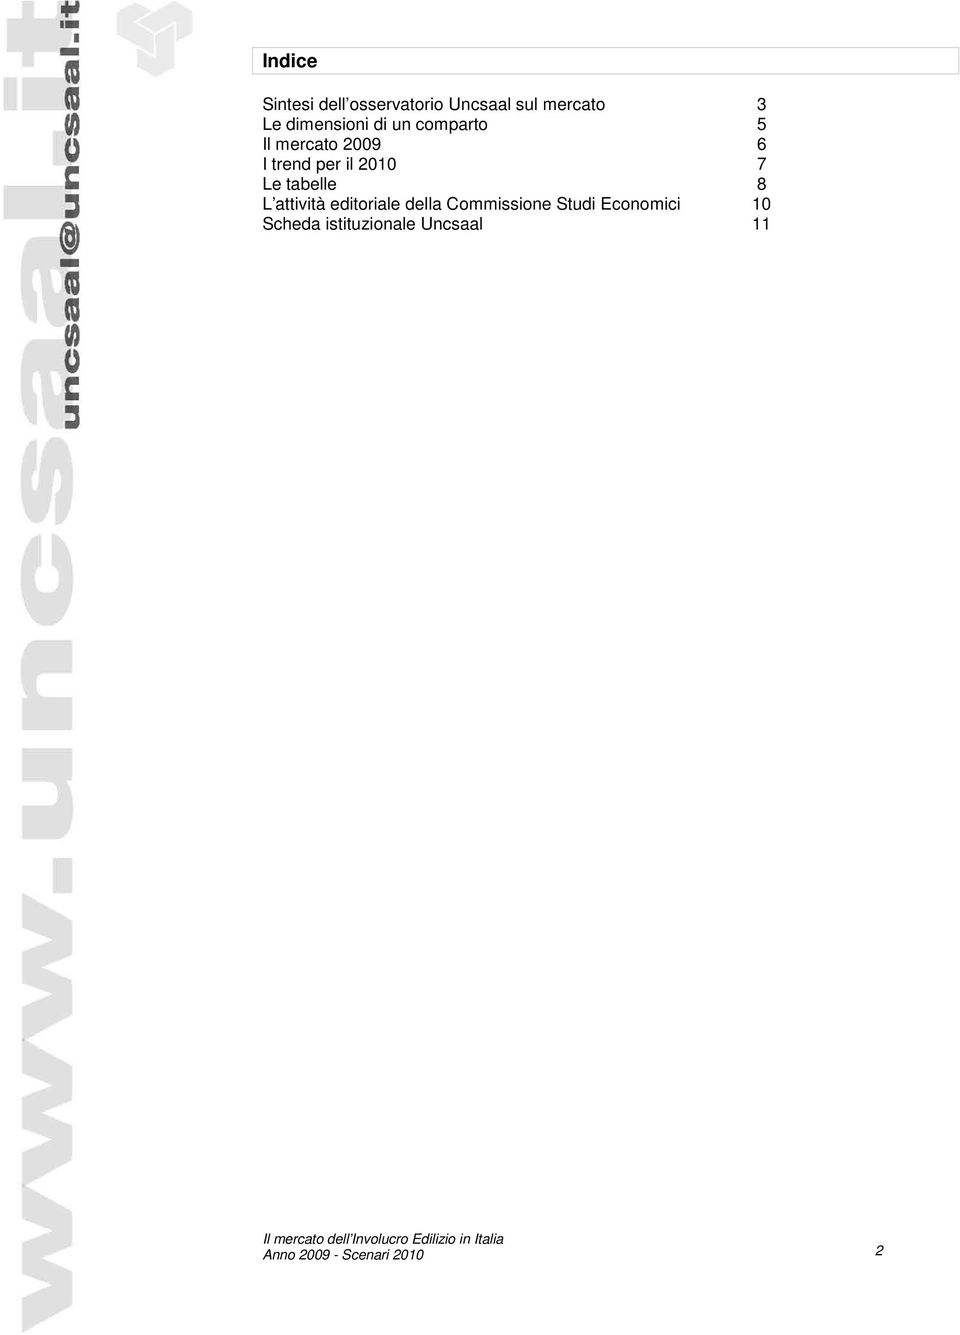 2010 7 Le tabelle 8 L attività editoriale della Commissione